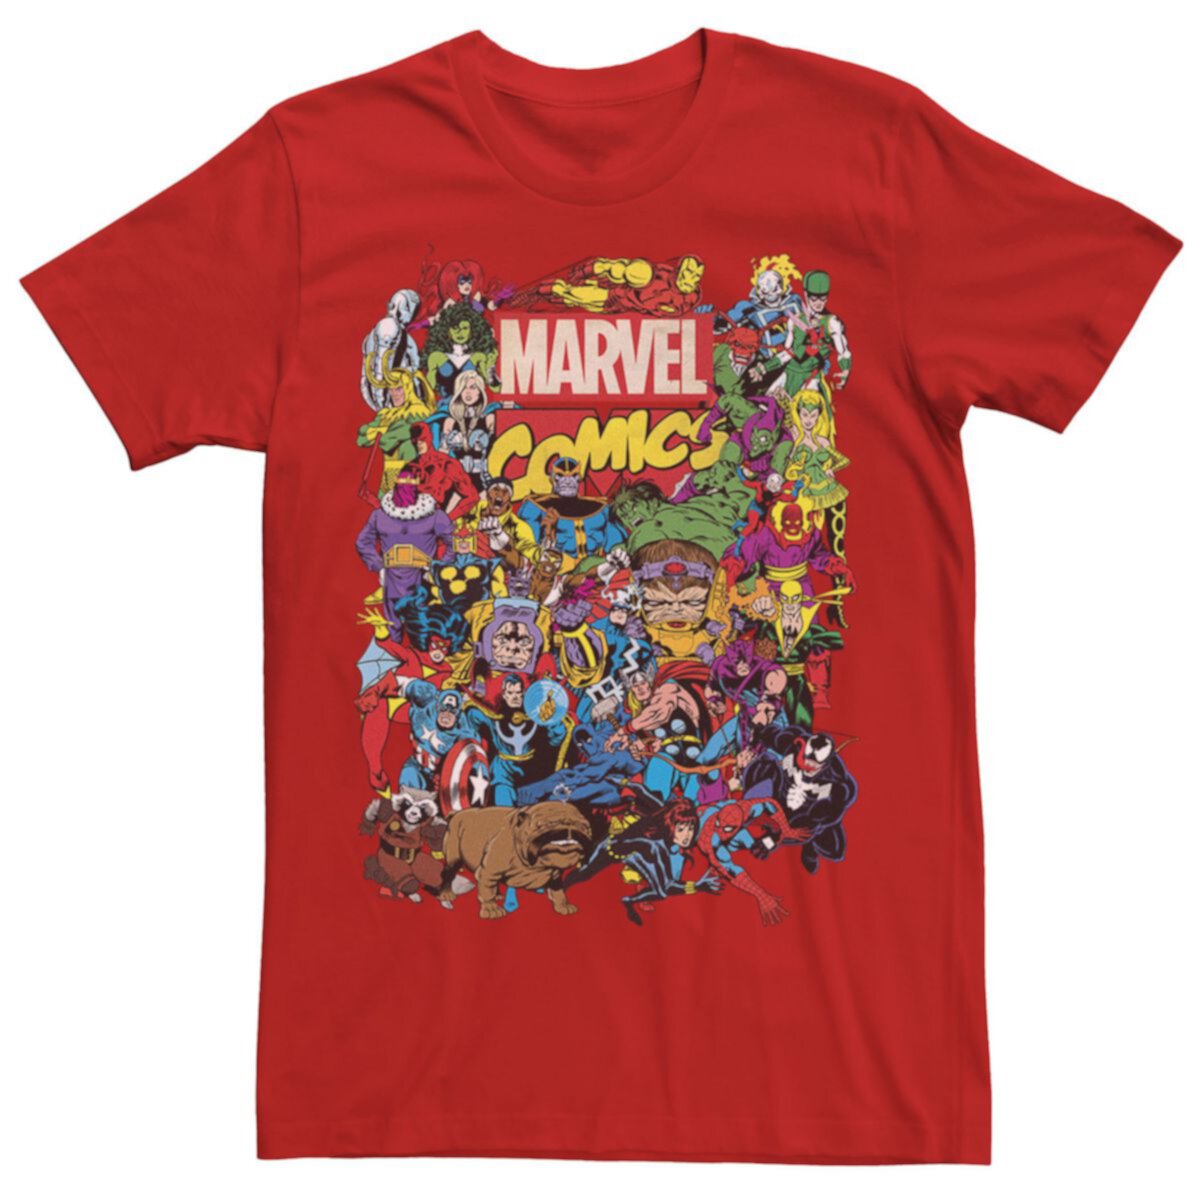 Мужская футболка с групповым снимком Marvel Comics Heroes Marvel